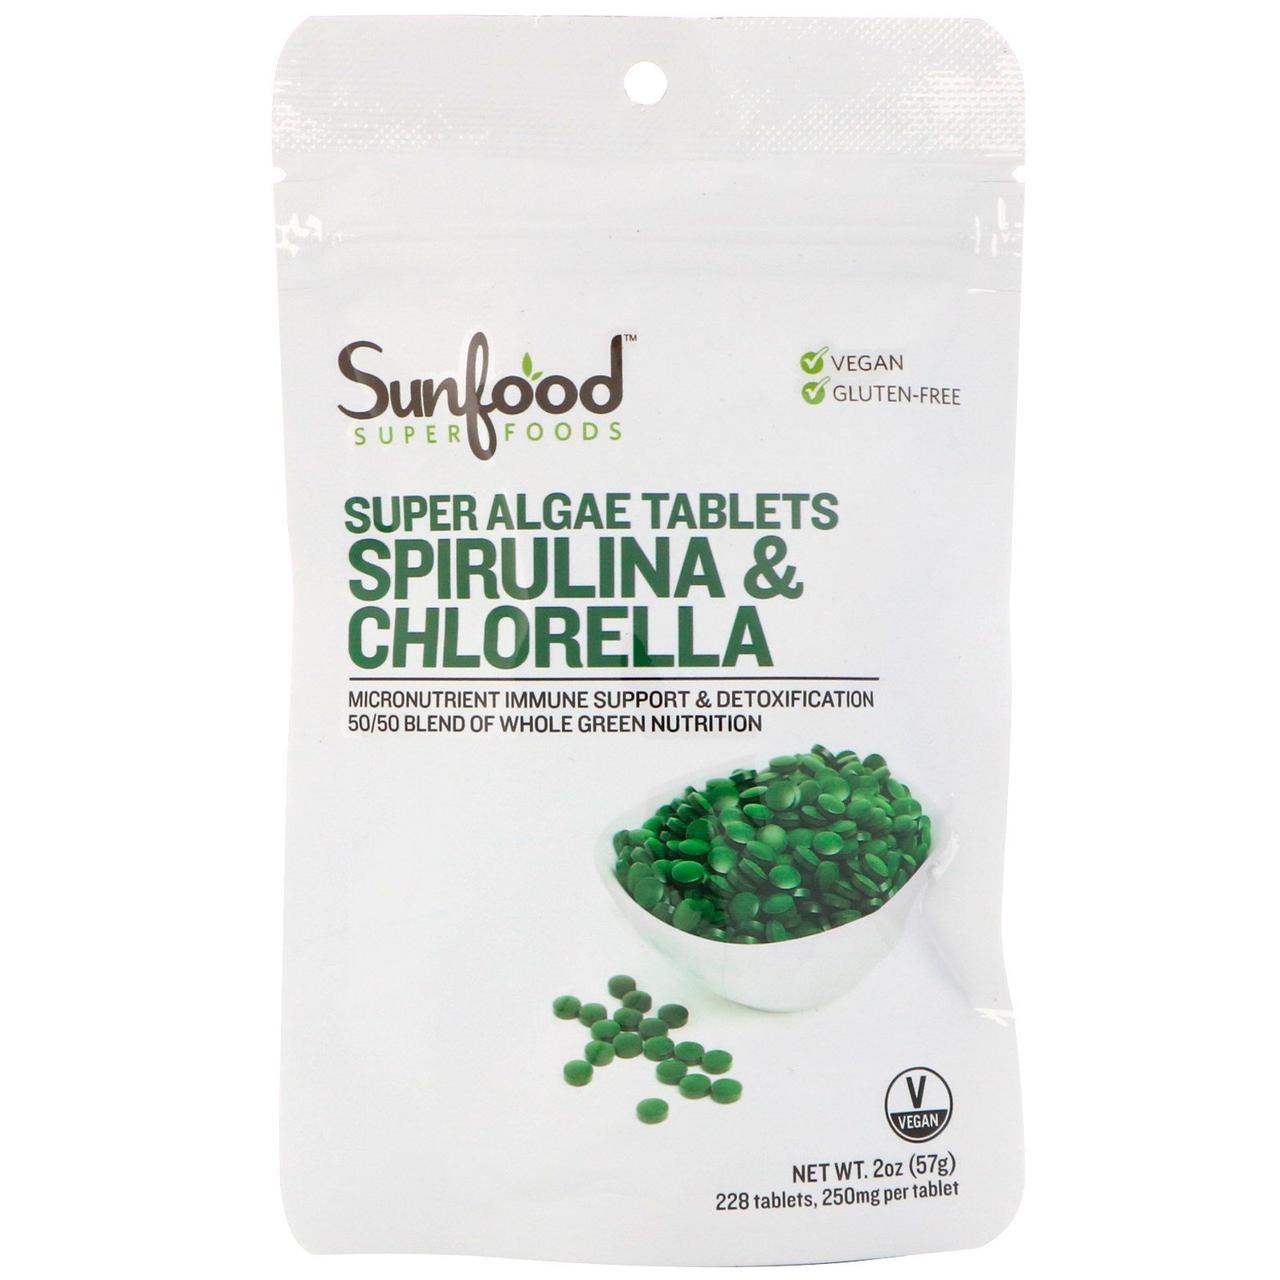 Спіруліна і хлорела, таблетки з суперводорослями, 225 таблеток, Sunfood